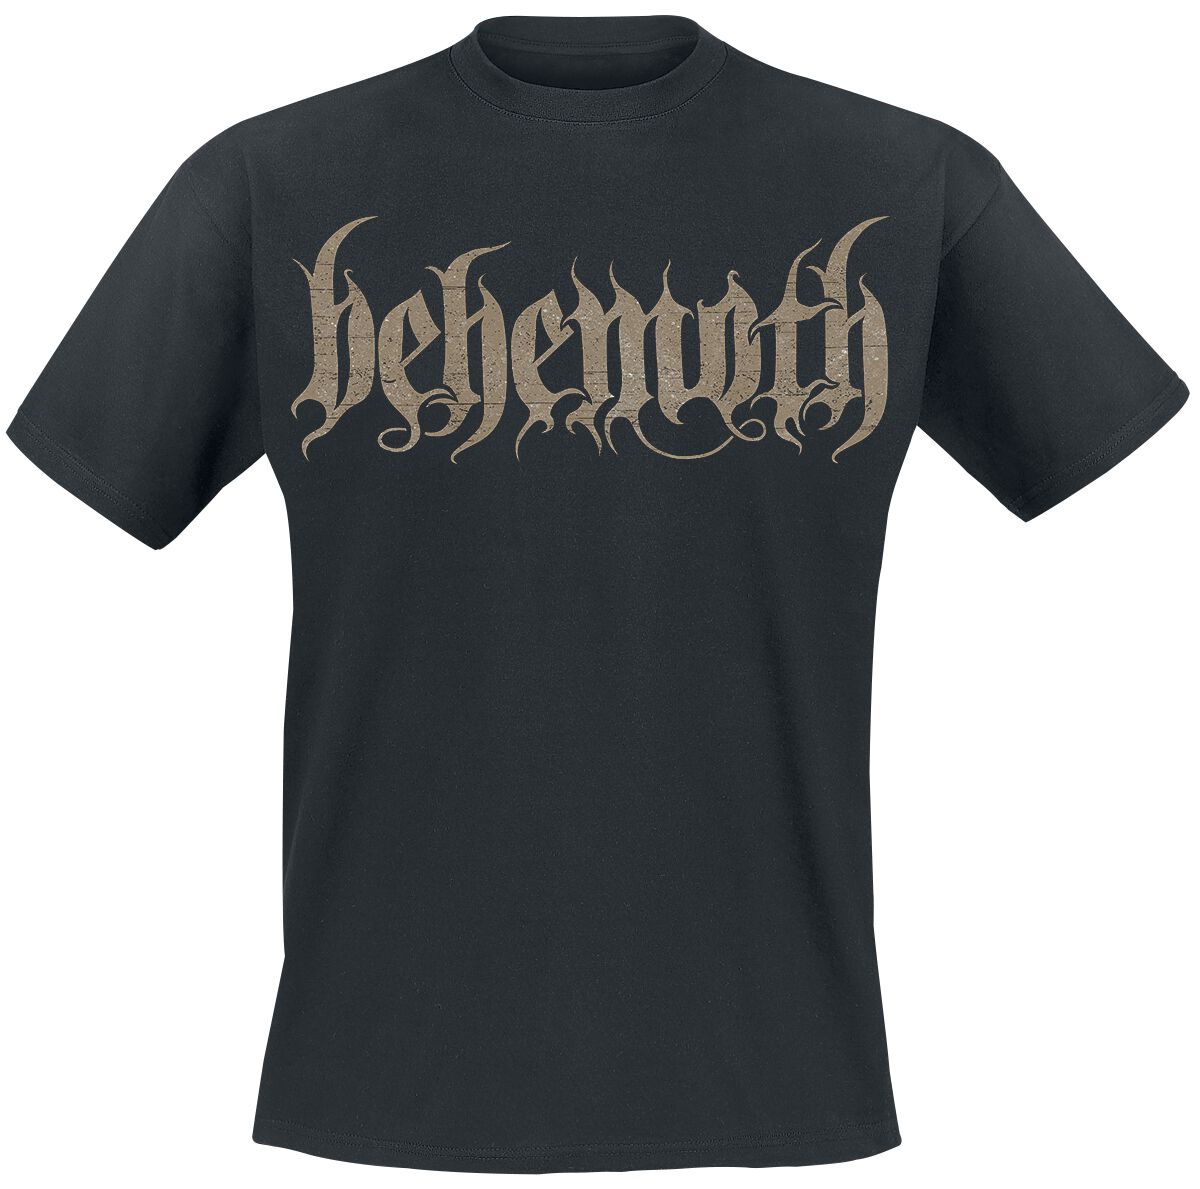 Behemoth T-Shirt - Opvs contra natvram - S bis XXL - für Männer - Größe XXL - schwarz  - EMP exklusives Merchandise!